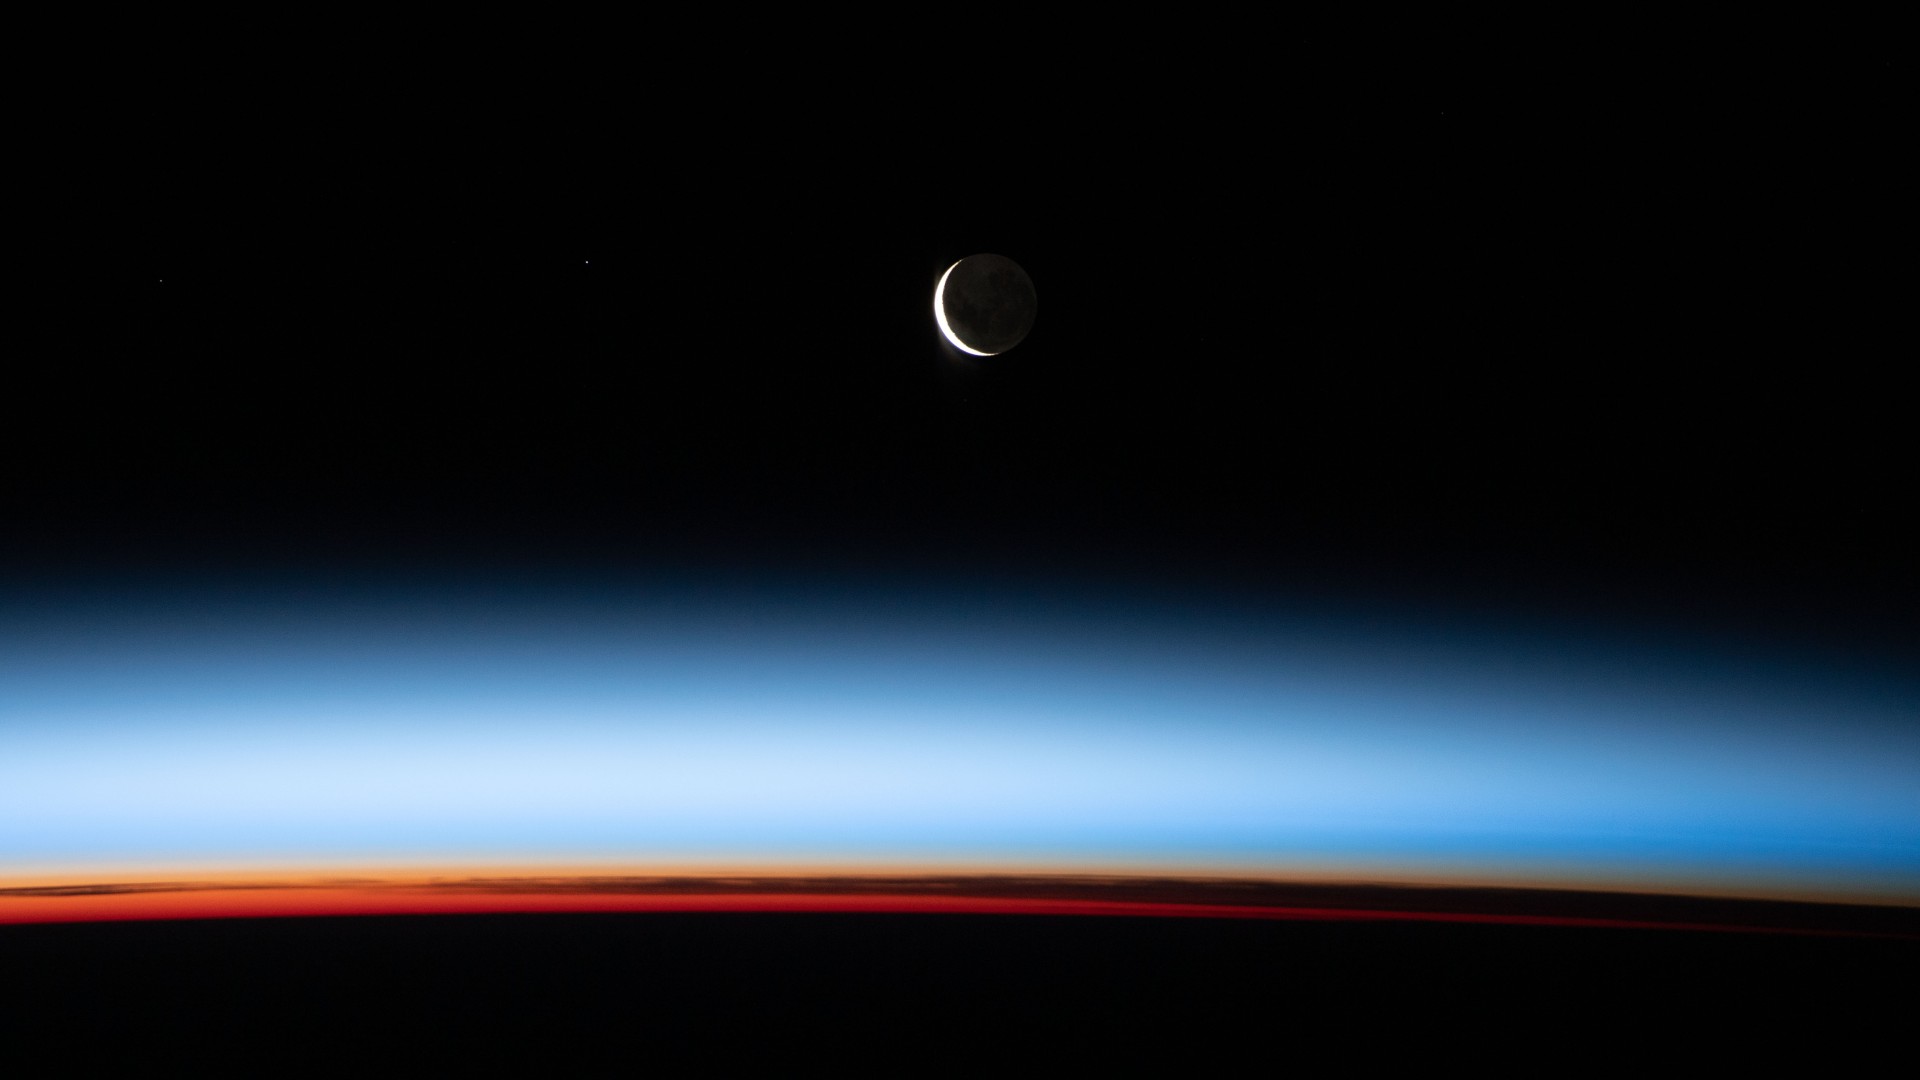 A Lua Nova está começando a crescer nesta imagem feita a partir da Estação Espacial Internacional (ISS). O registro aconteceu com o equipamento 431 quilômetros acima do Oceano Pacífico, a leste da Nova Zelândia. Vê-se uma fatia iluminada da Lua, enquanto a maior parte está voltada para o lado oposto ao Sol, ficando na escuridão. Acima da superfície da Terra, a sequência de cores retrata as várias camadas da atmosfera. Laranjas e amarelos profundos aparecem na troposfera, que contém mais de 80% da massa da atmosfera e quase todo o vapor d’água. A região rosa a branca, acima das nuvens, é a estratosfera inferior, com poucas ou nenhuma nuvem. Acima da estratosfera, as camadas azuis marcam a transição entre a atmosfera média e superior, gradualmente desaparecendo na escuridão do espaço sideral